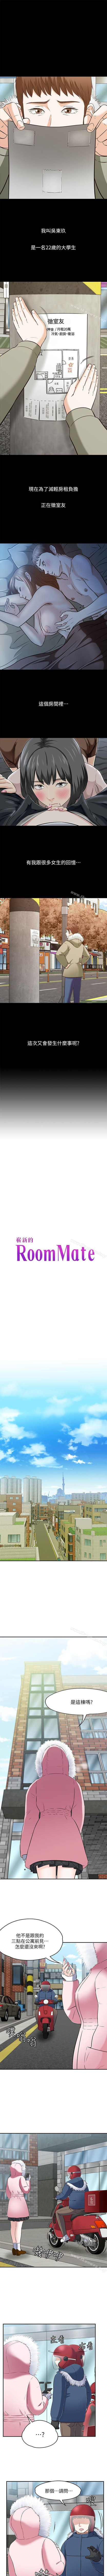 Roommate 1-108 384